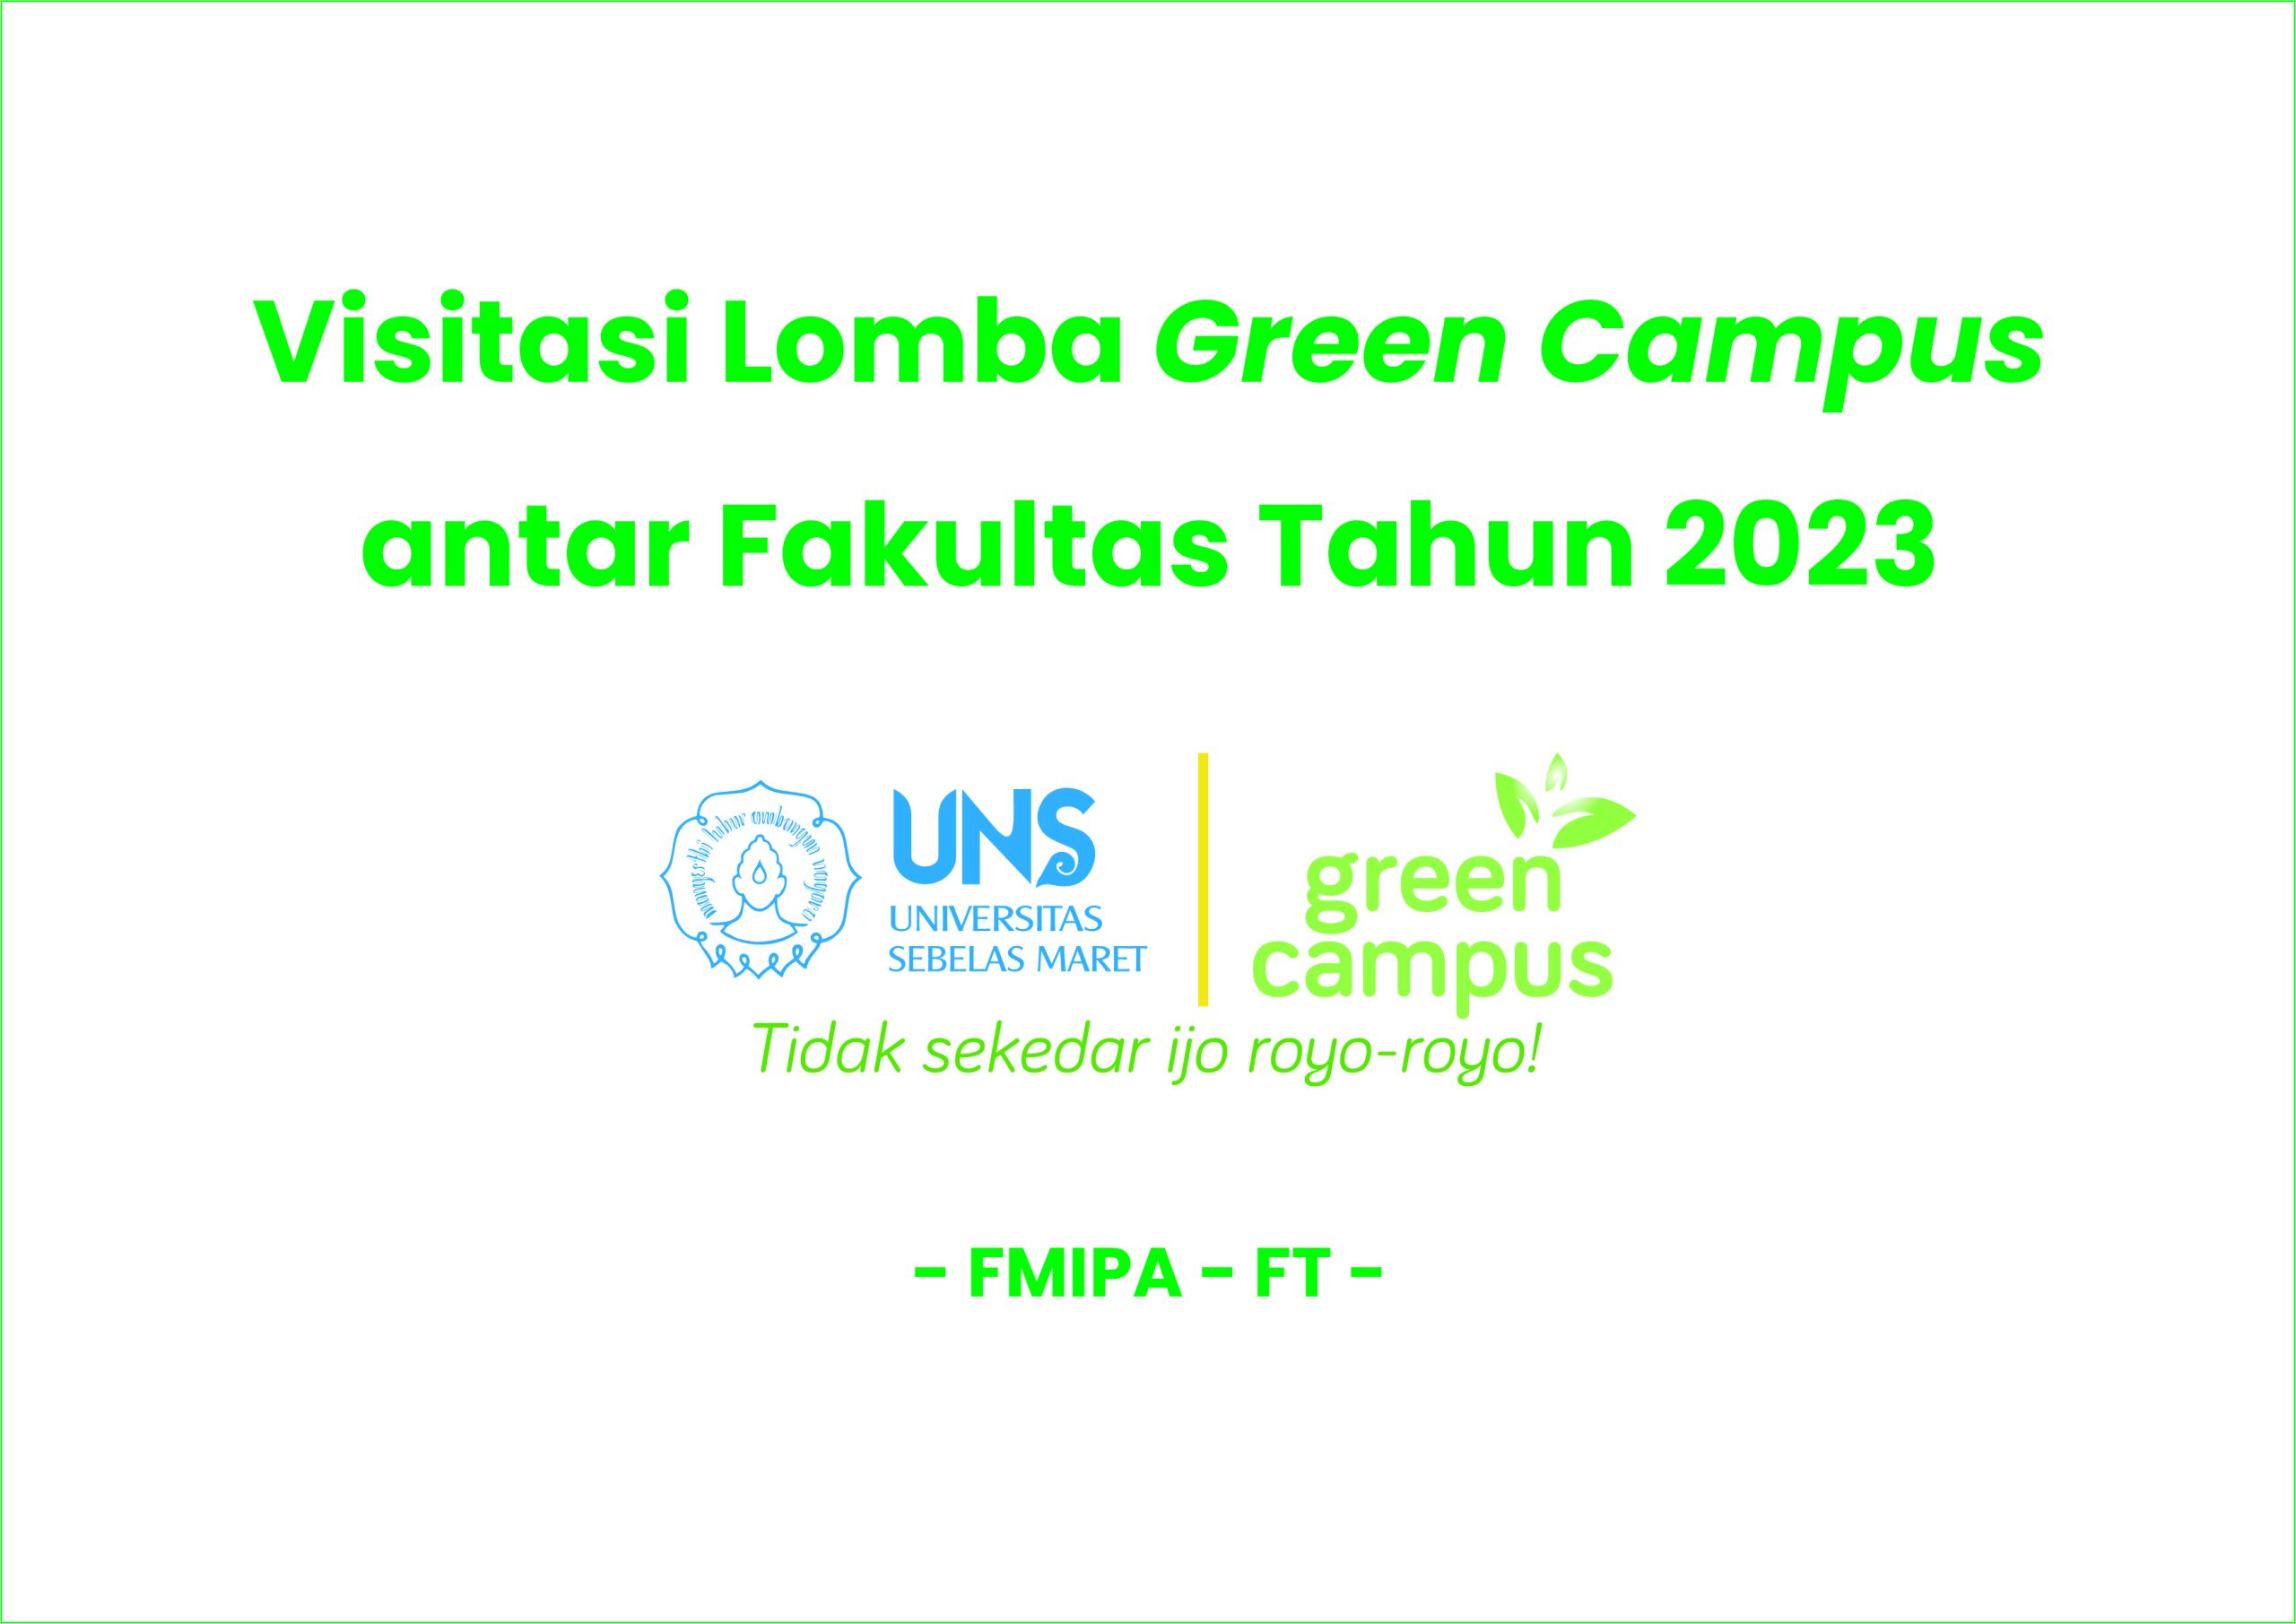 Visitasi Tim Green Campus UNS (FMIPA – FT)